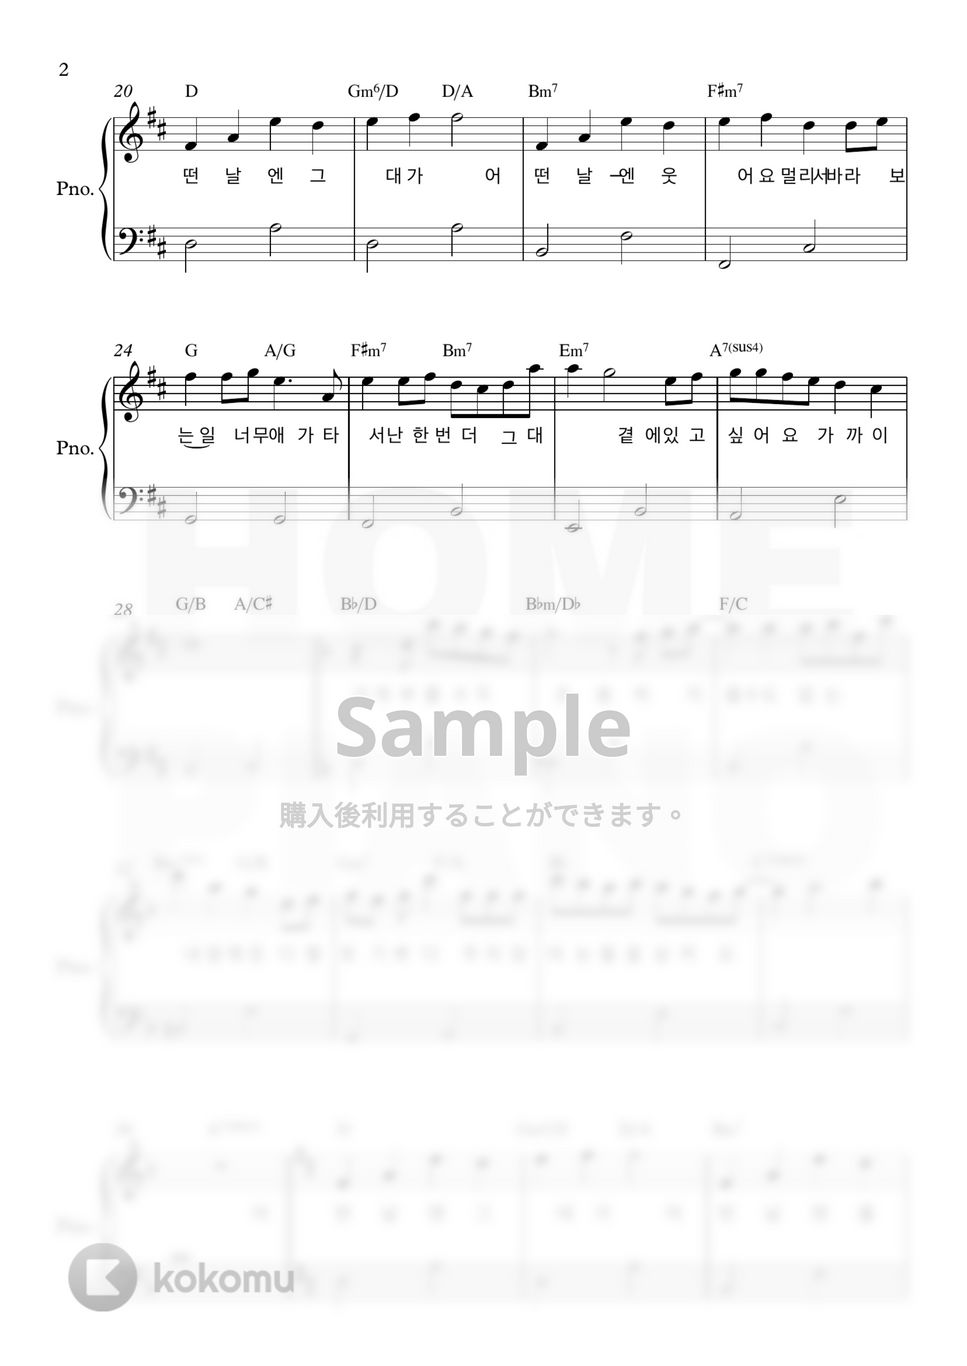 愛の不時着 OST - ある日に (初級) by HOME PIANO